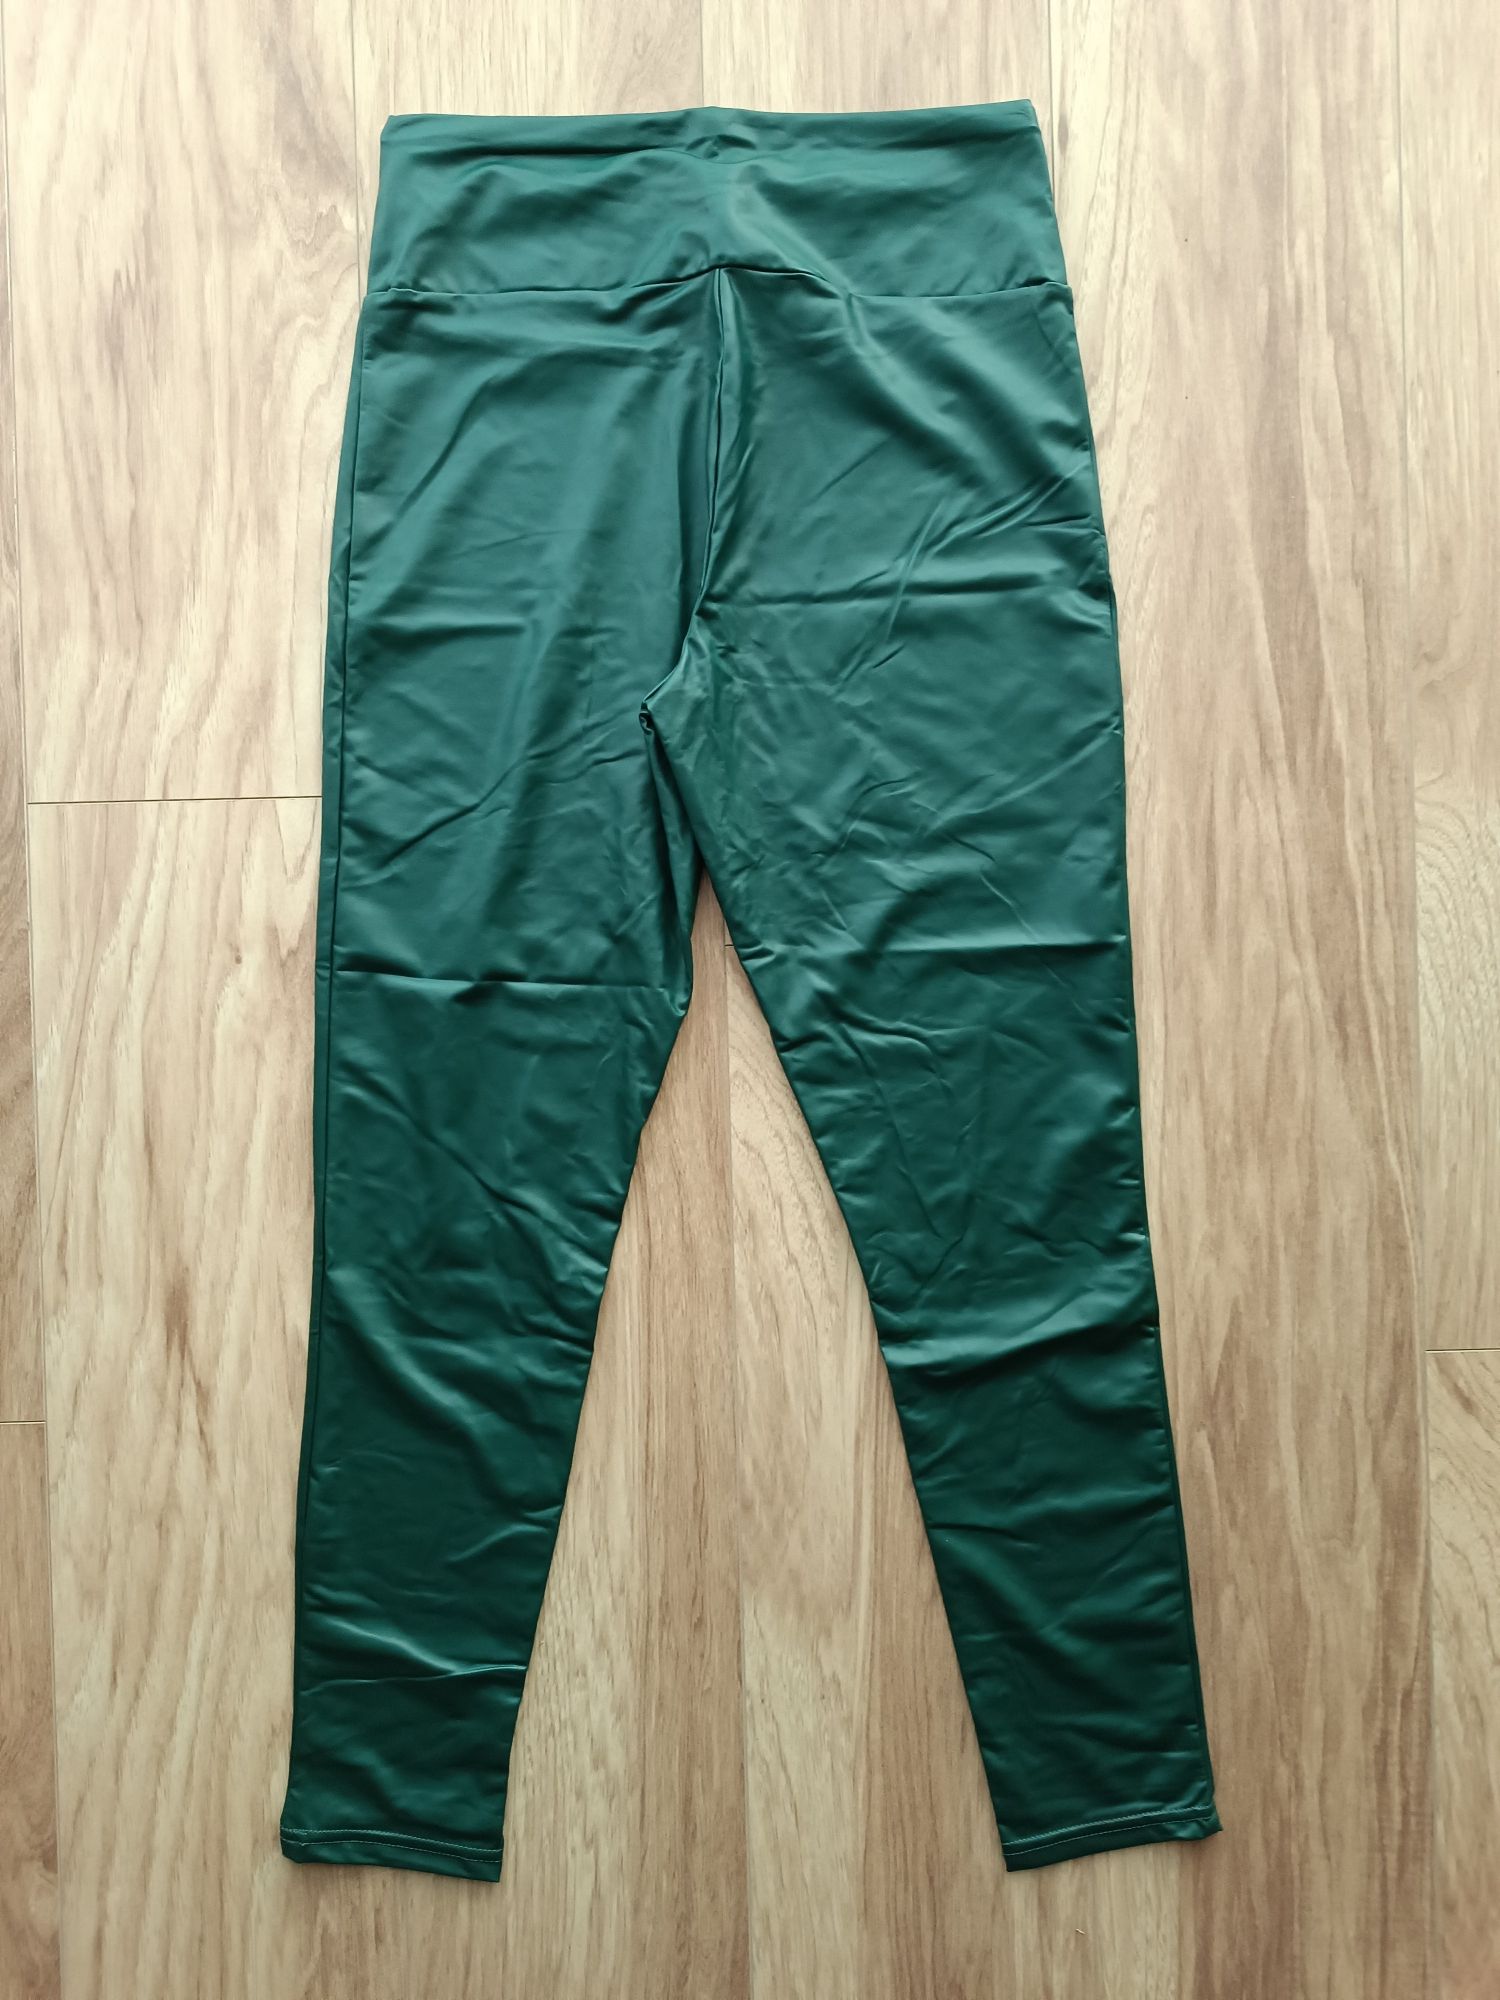 Skóropodobne damskie zielone turkusowe legginsy średni stan 40/42 L/XL